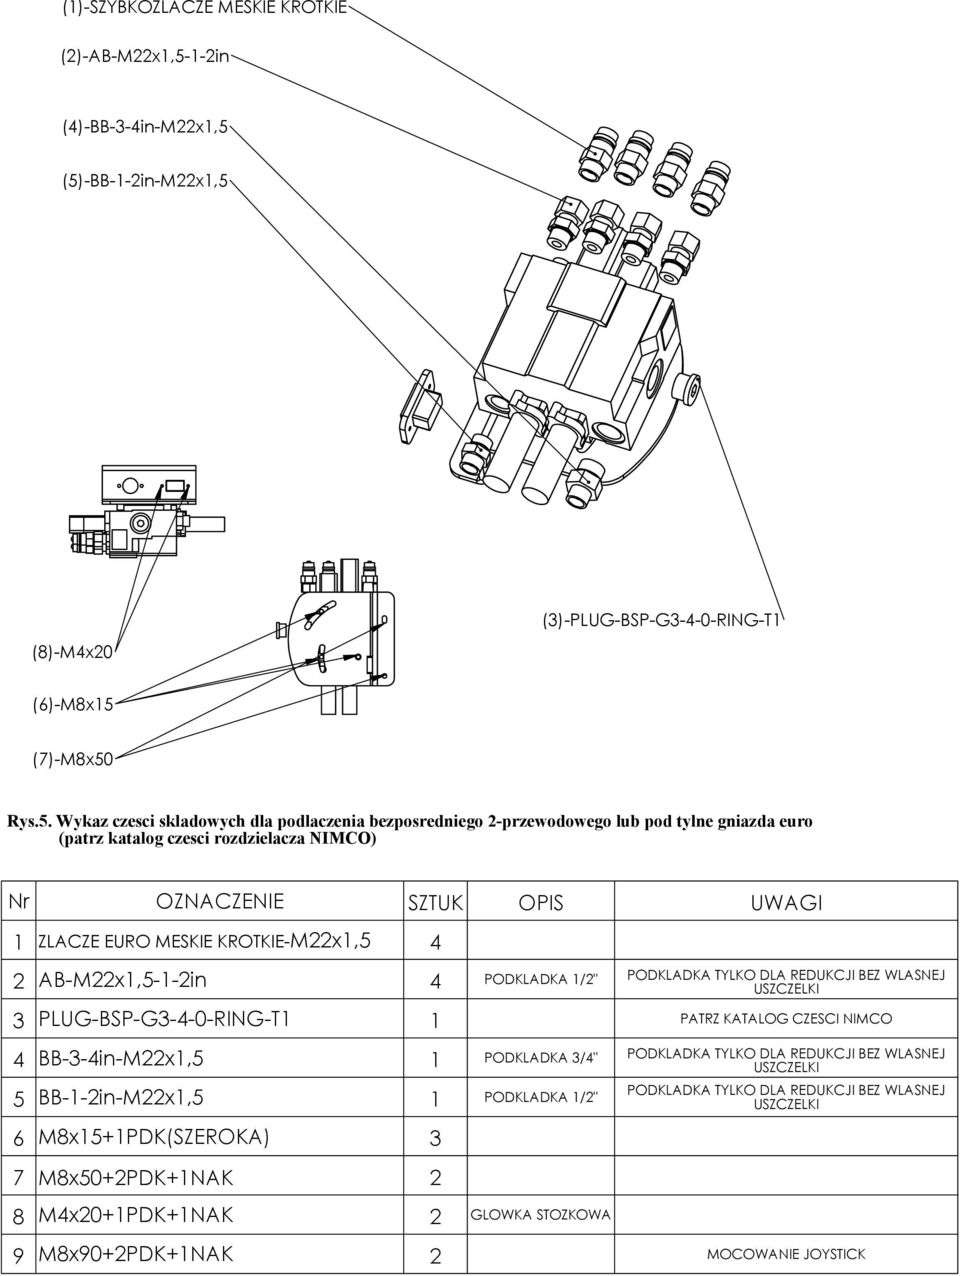 (5)-BB-1-2in-M22x1,5 (3)-PLUG-BSP-G3-4-0-RING-T1 (8)-M4x20 (6)-M8x15 (7)-M8x50 Rys.5. Wykaz czesci skladowych dla podlaczenia bezposredniego 2-przewodowego lub pod tylne gniazda euro (patrz